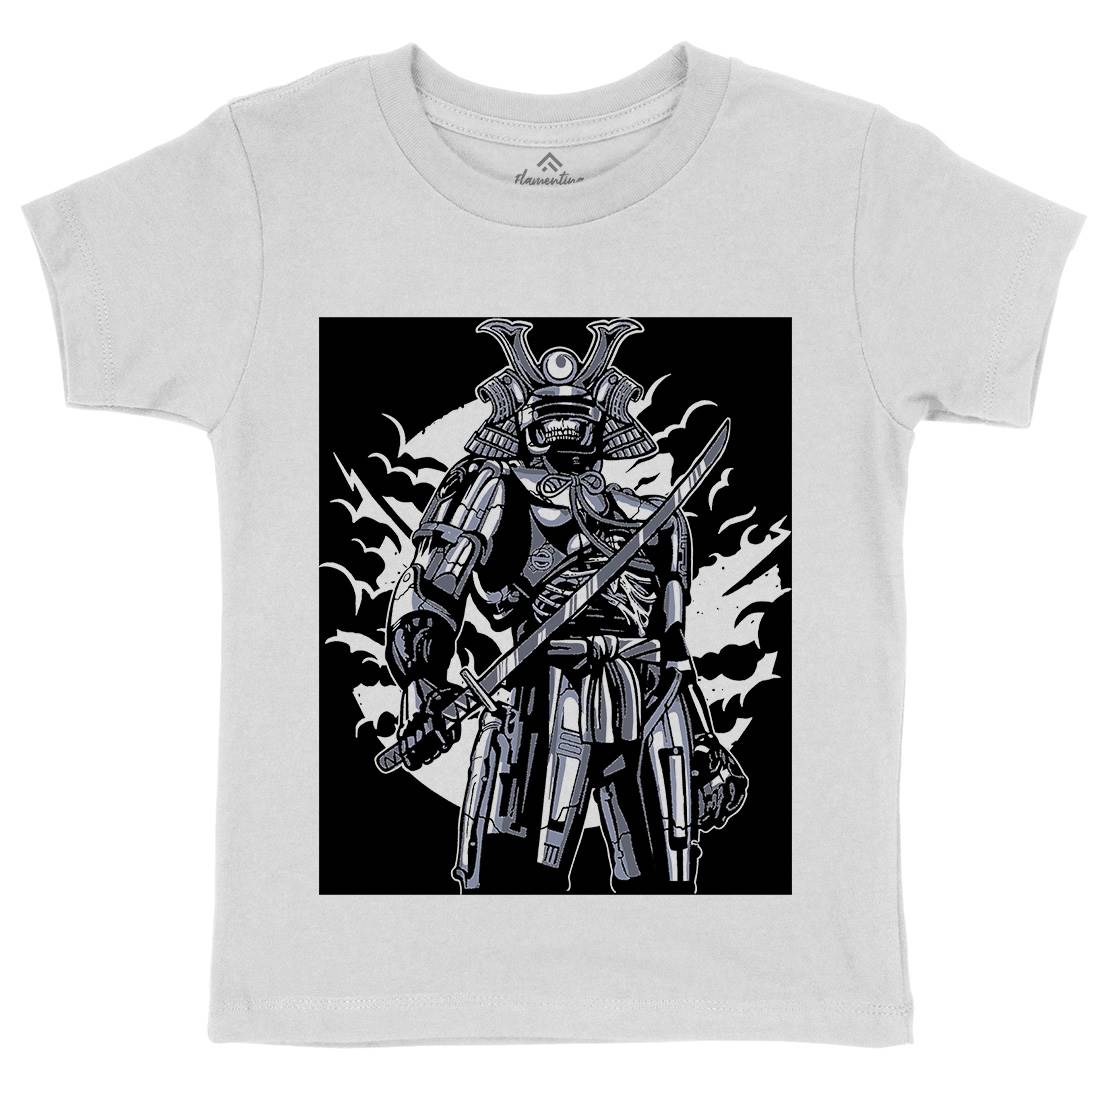 Samurai Robot Kids Crew Neck T-Shirt Warriors A569